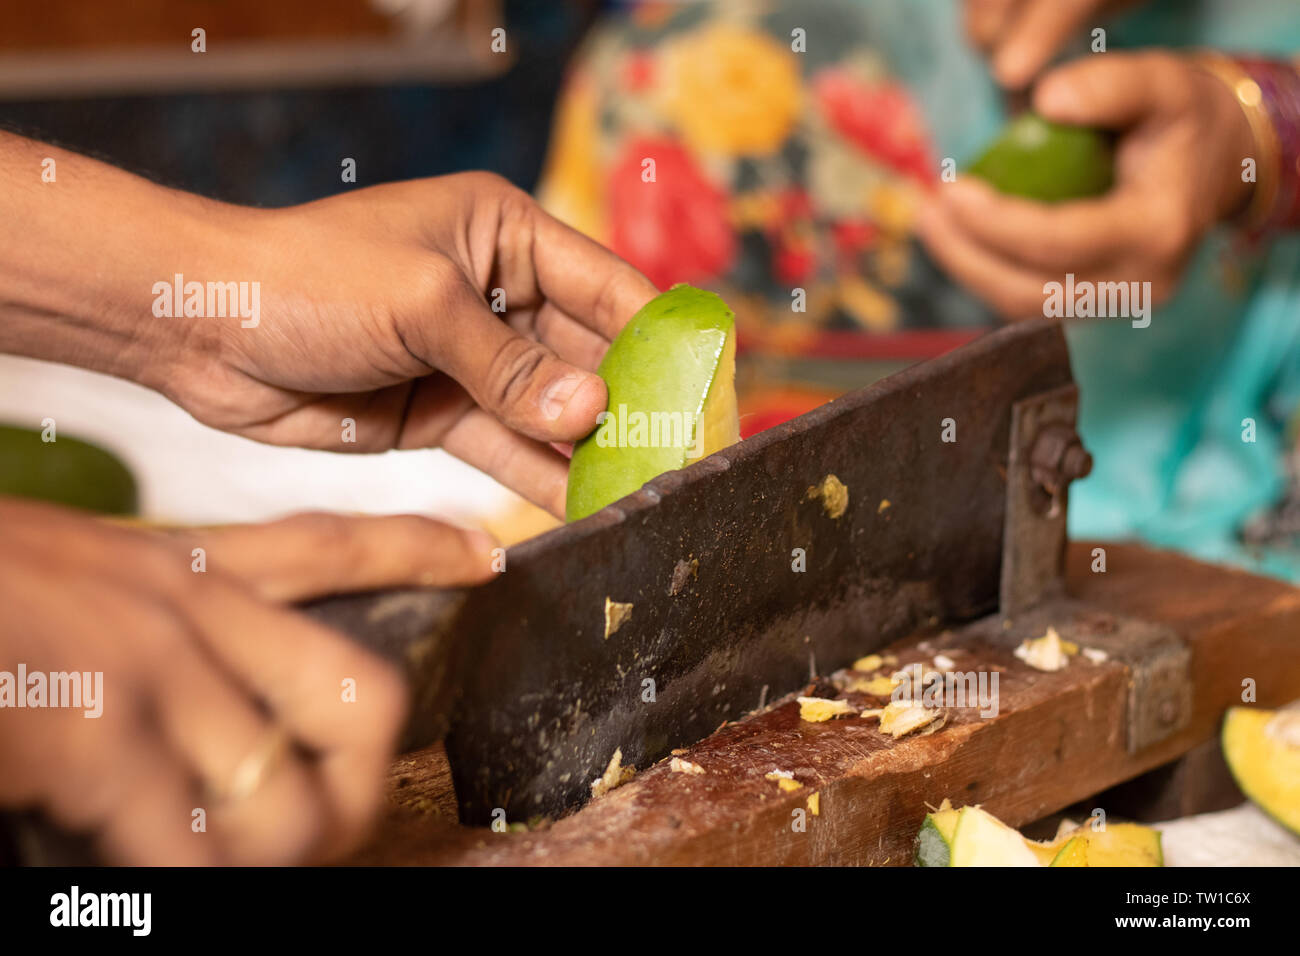 https://c8.alamy.com/compes/tw1c6x/entrega-closeuof-cortando-mango-maduro-para-hacer-picke-al-indio-en-la-india-con-la-cortadora-de-verduras-tw1c6x.jpg